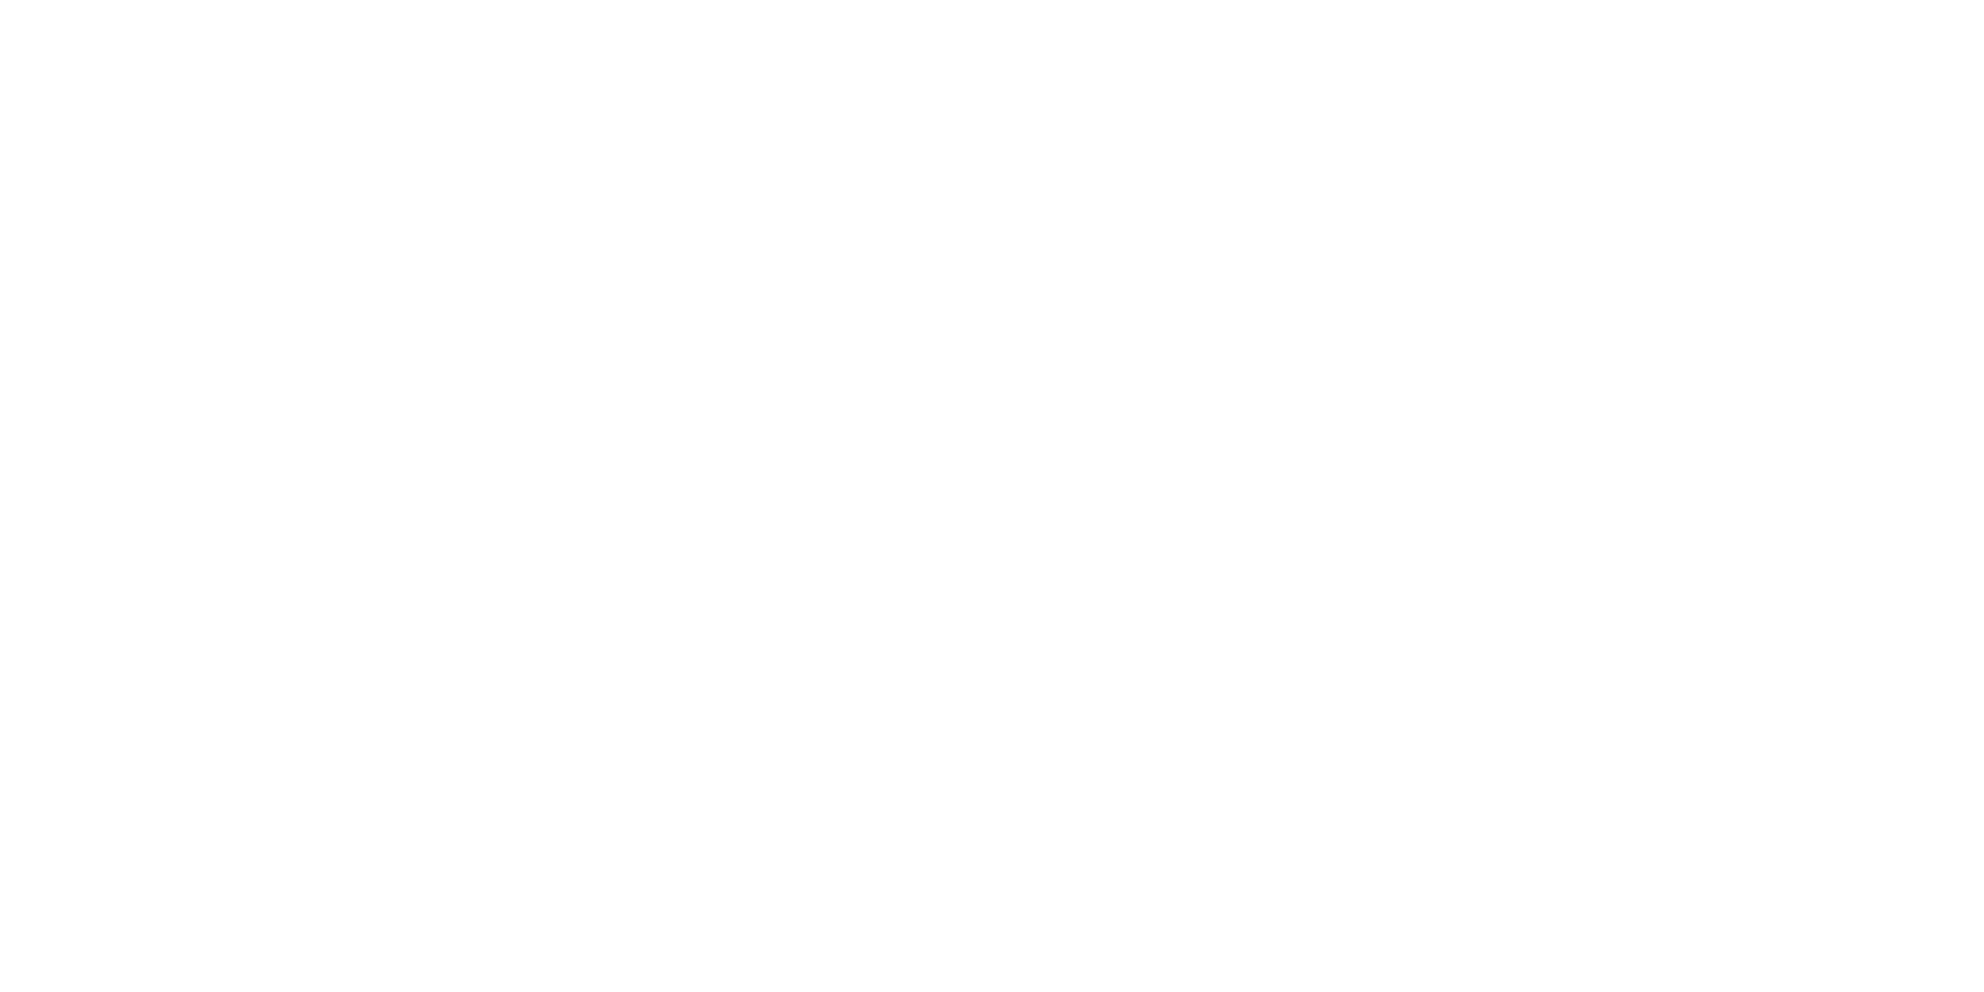 LifeDive Logo